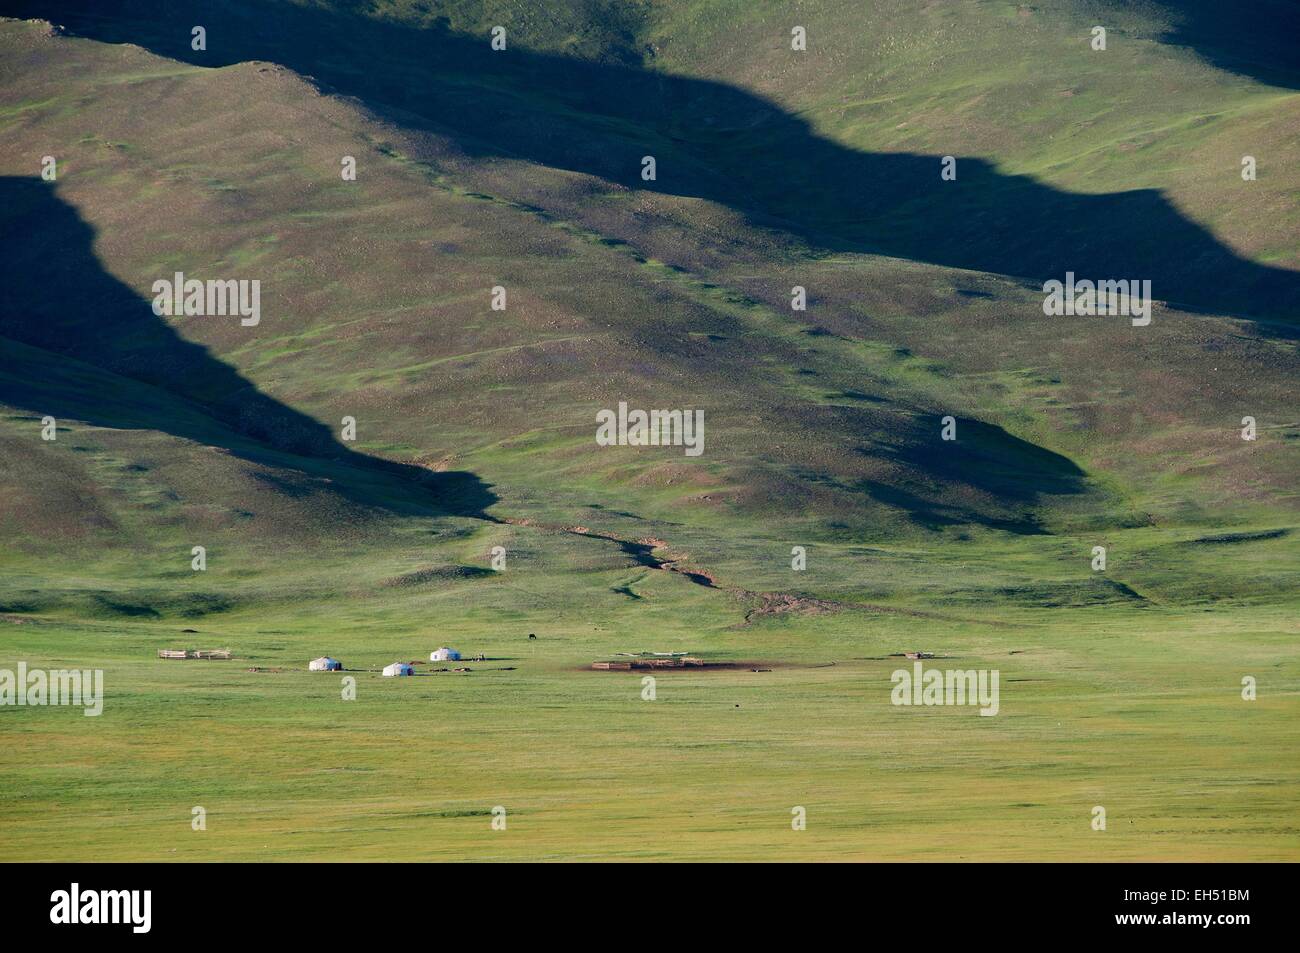 La Mongolie, le lac Khövsgöl Nuur, Zuun, des yourtes dans la steppe Banque D'Images